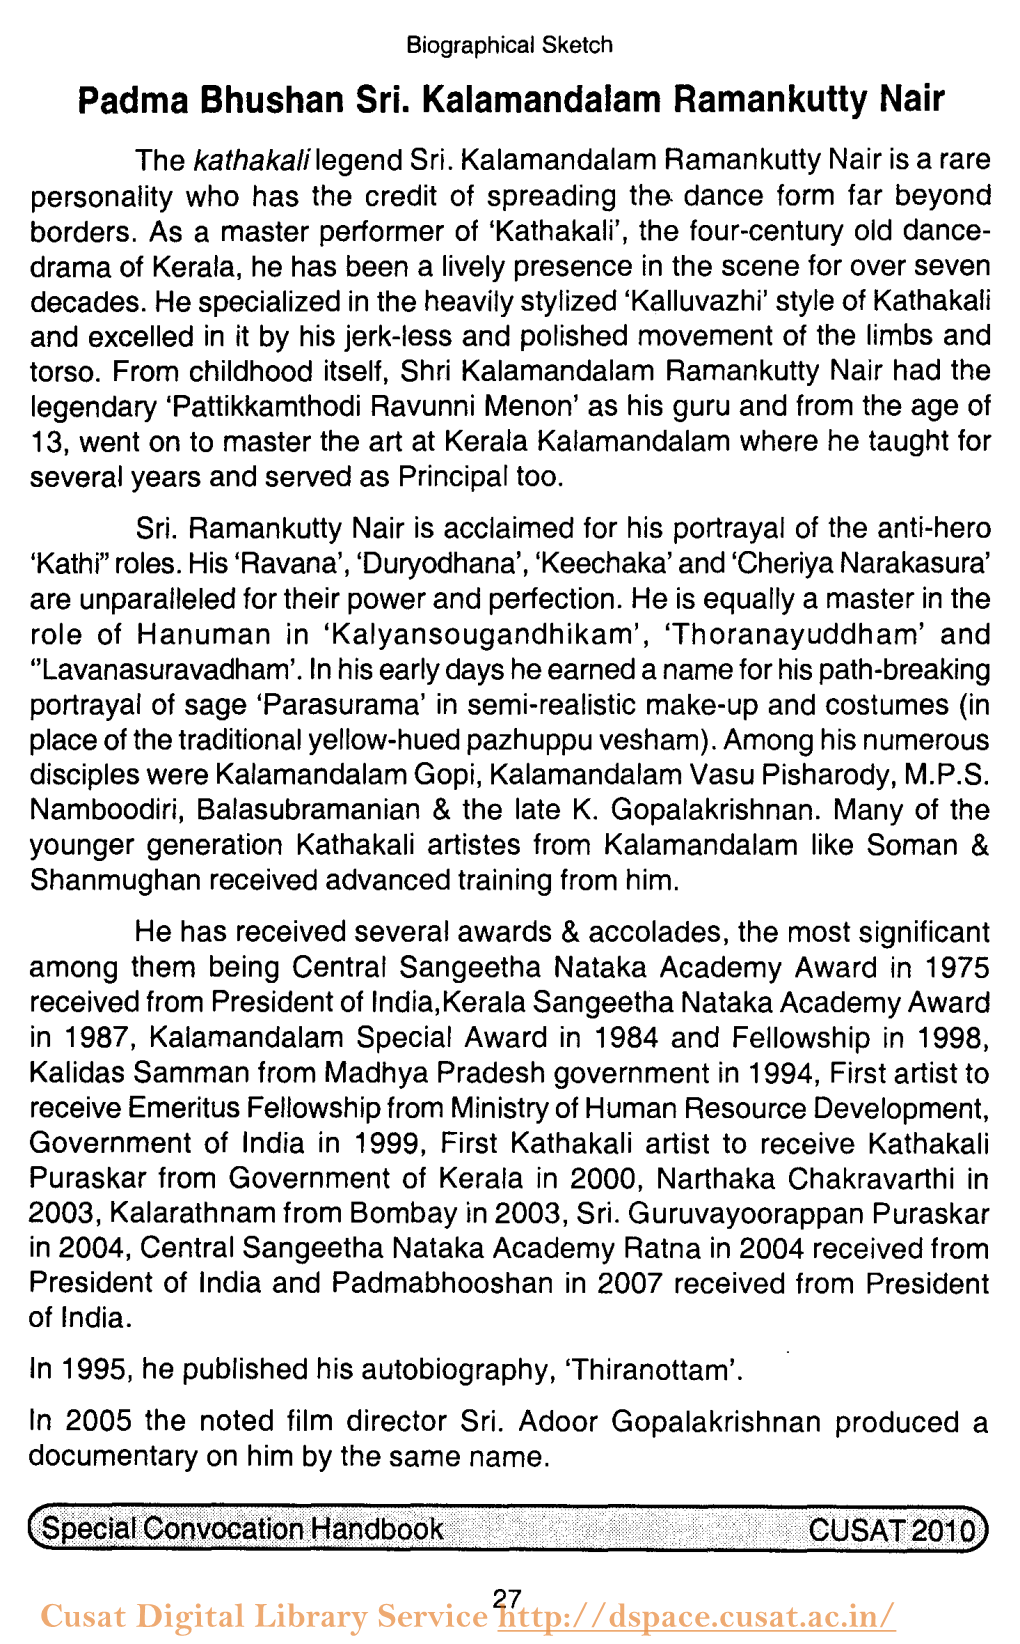 Padma Bhushan Sri. Kalamandalam Ramankutty Nair the Kathakali Legend Sri